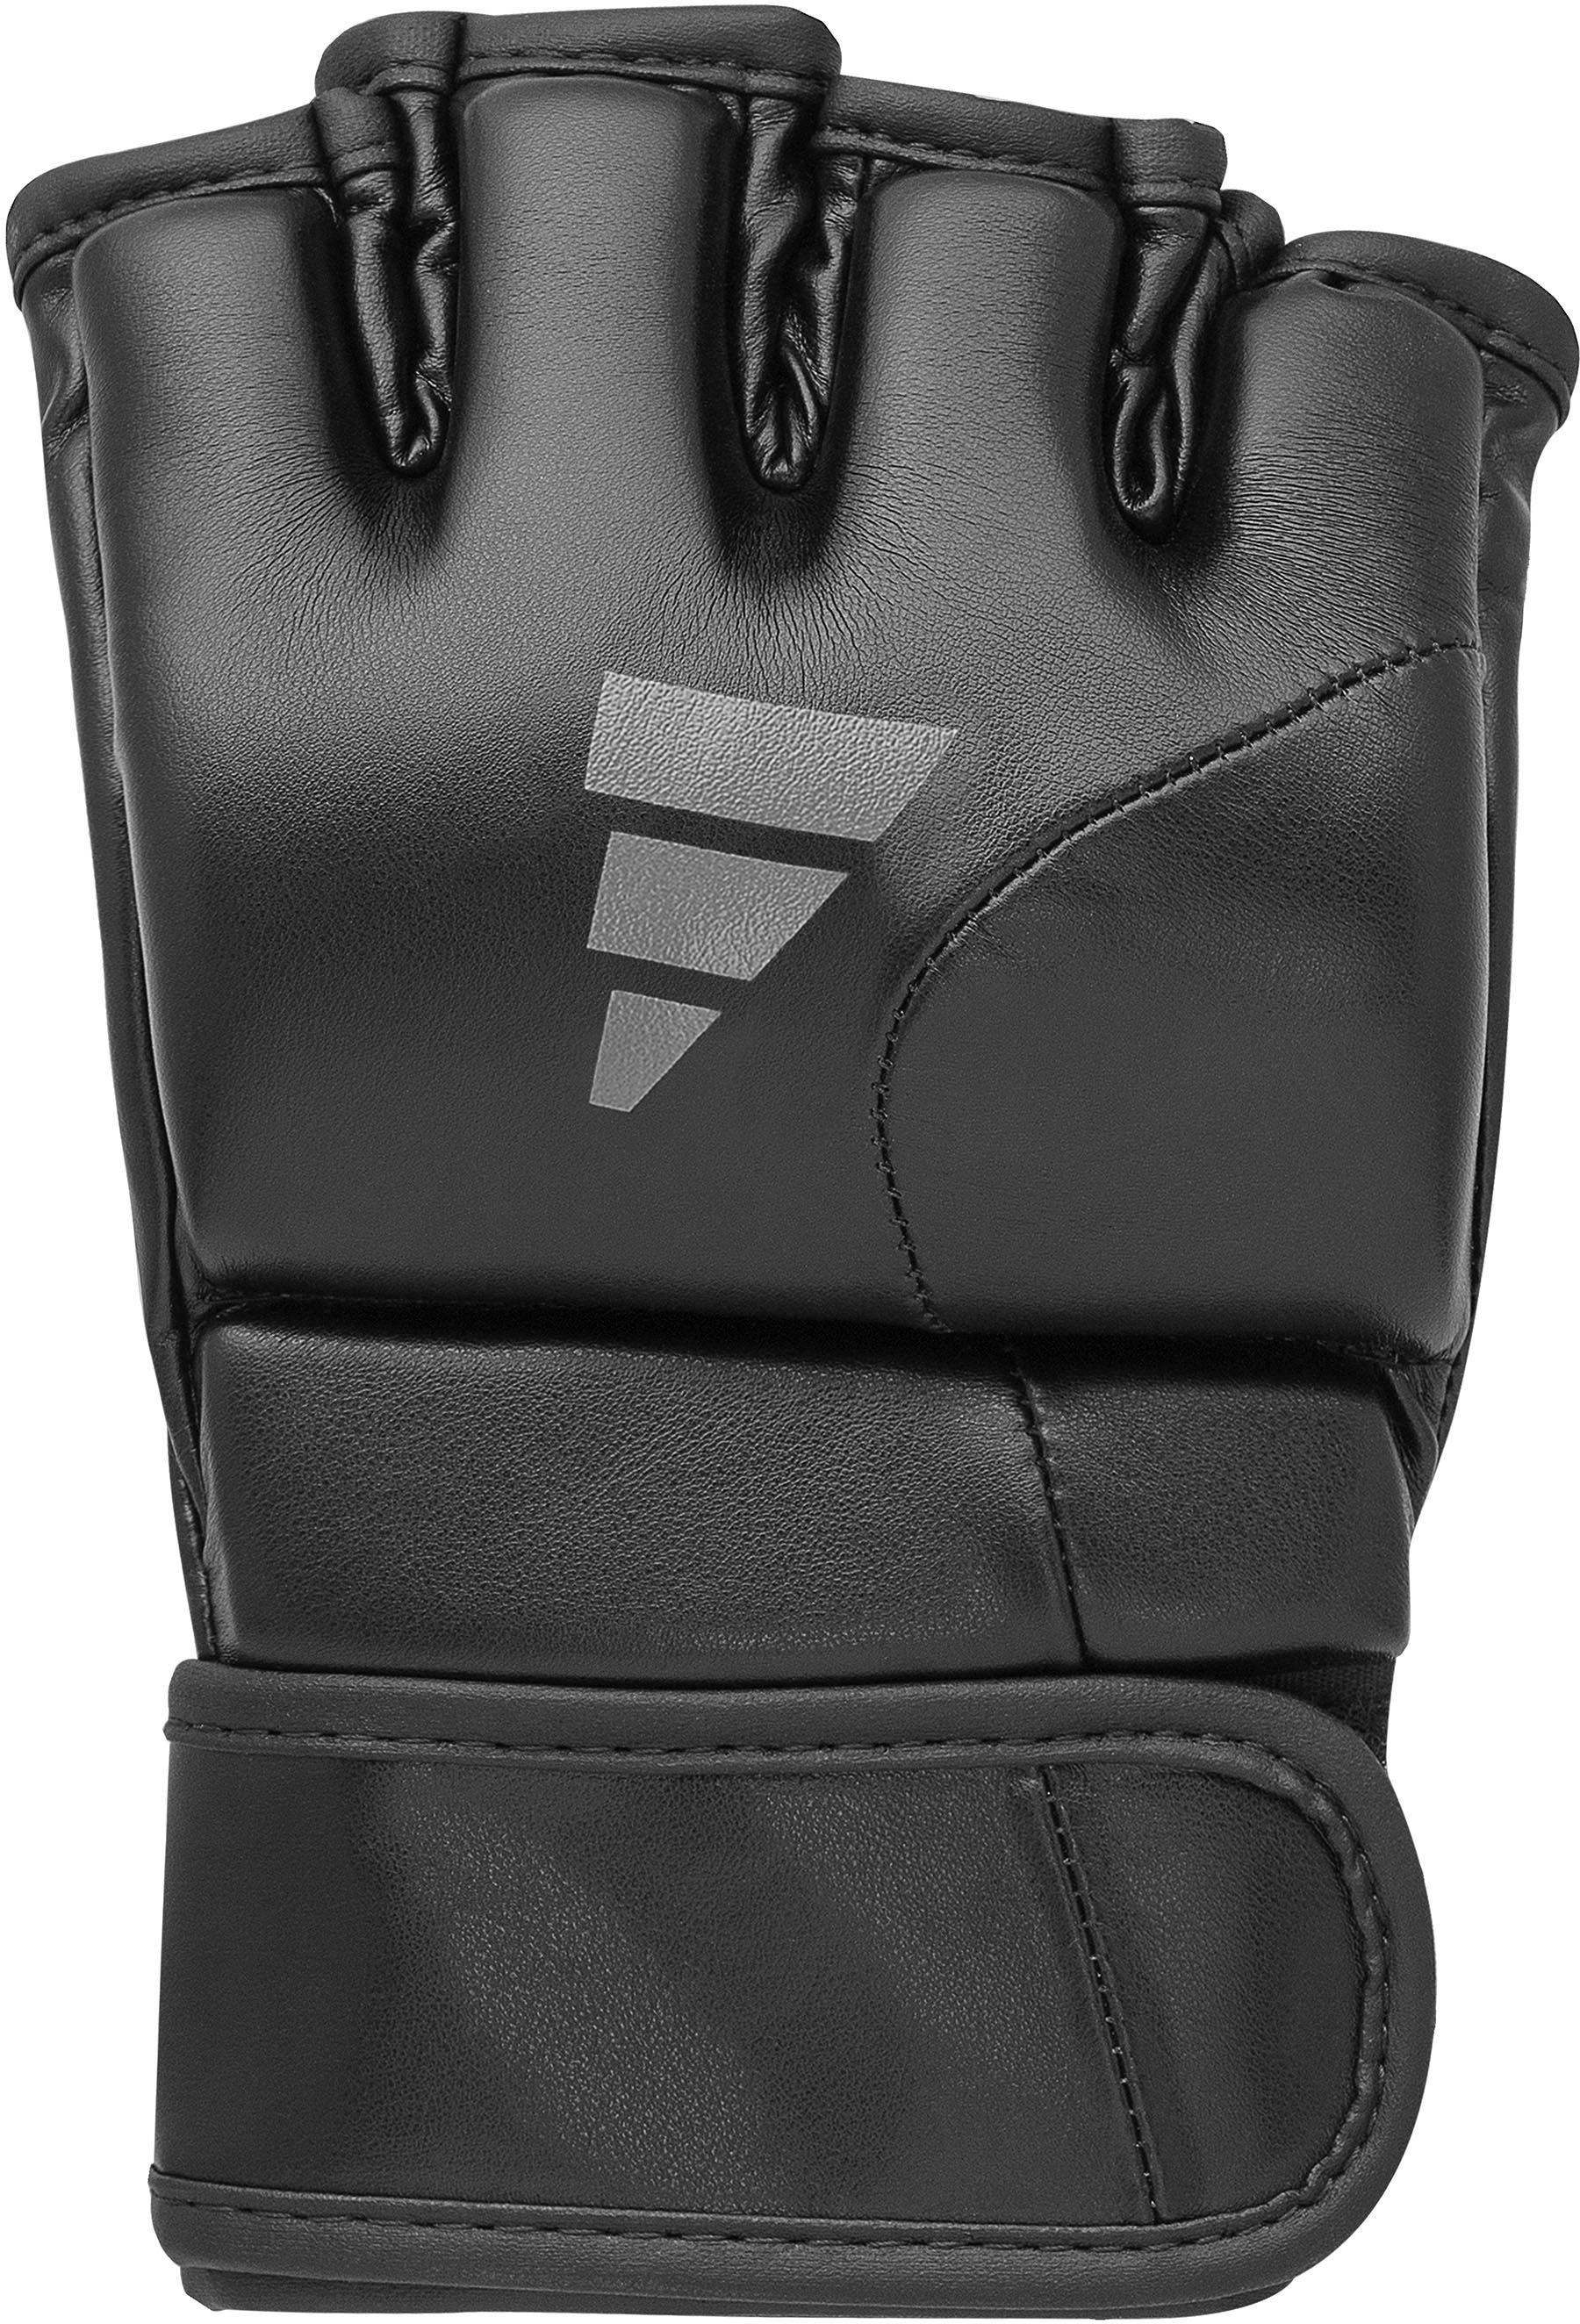 MMA-Handschuhe bei Tilt adidas »Speed Performance G150«